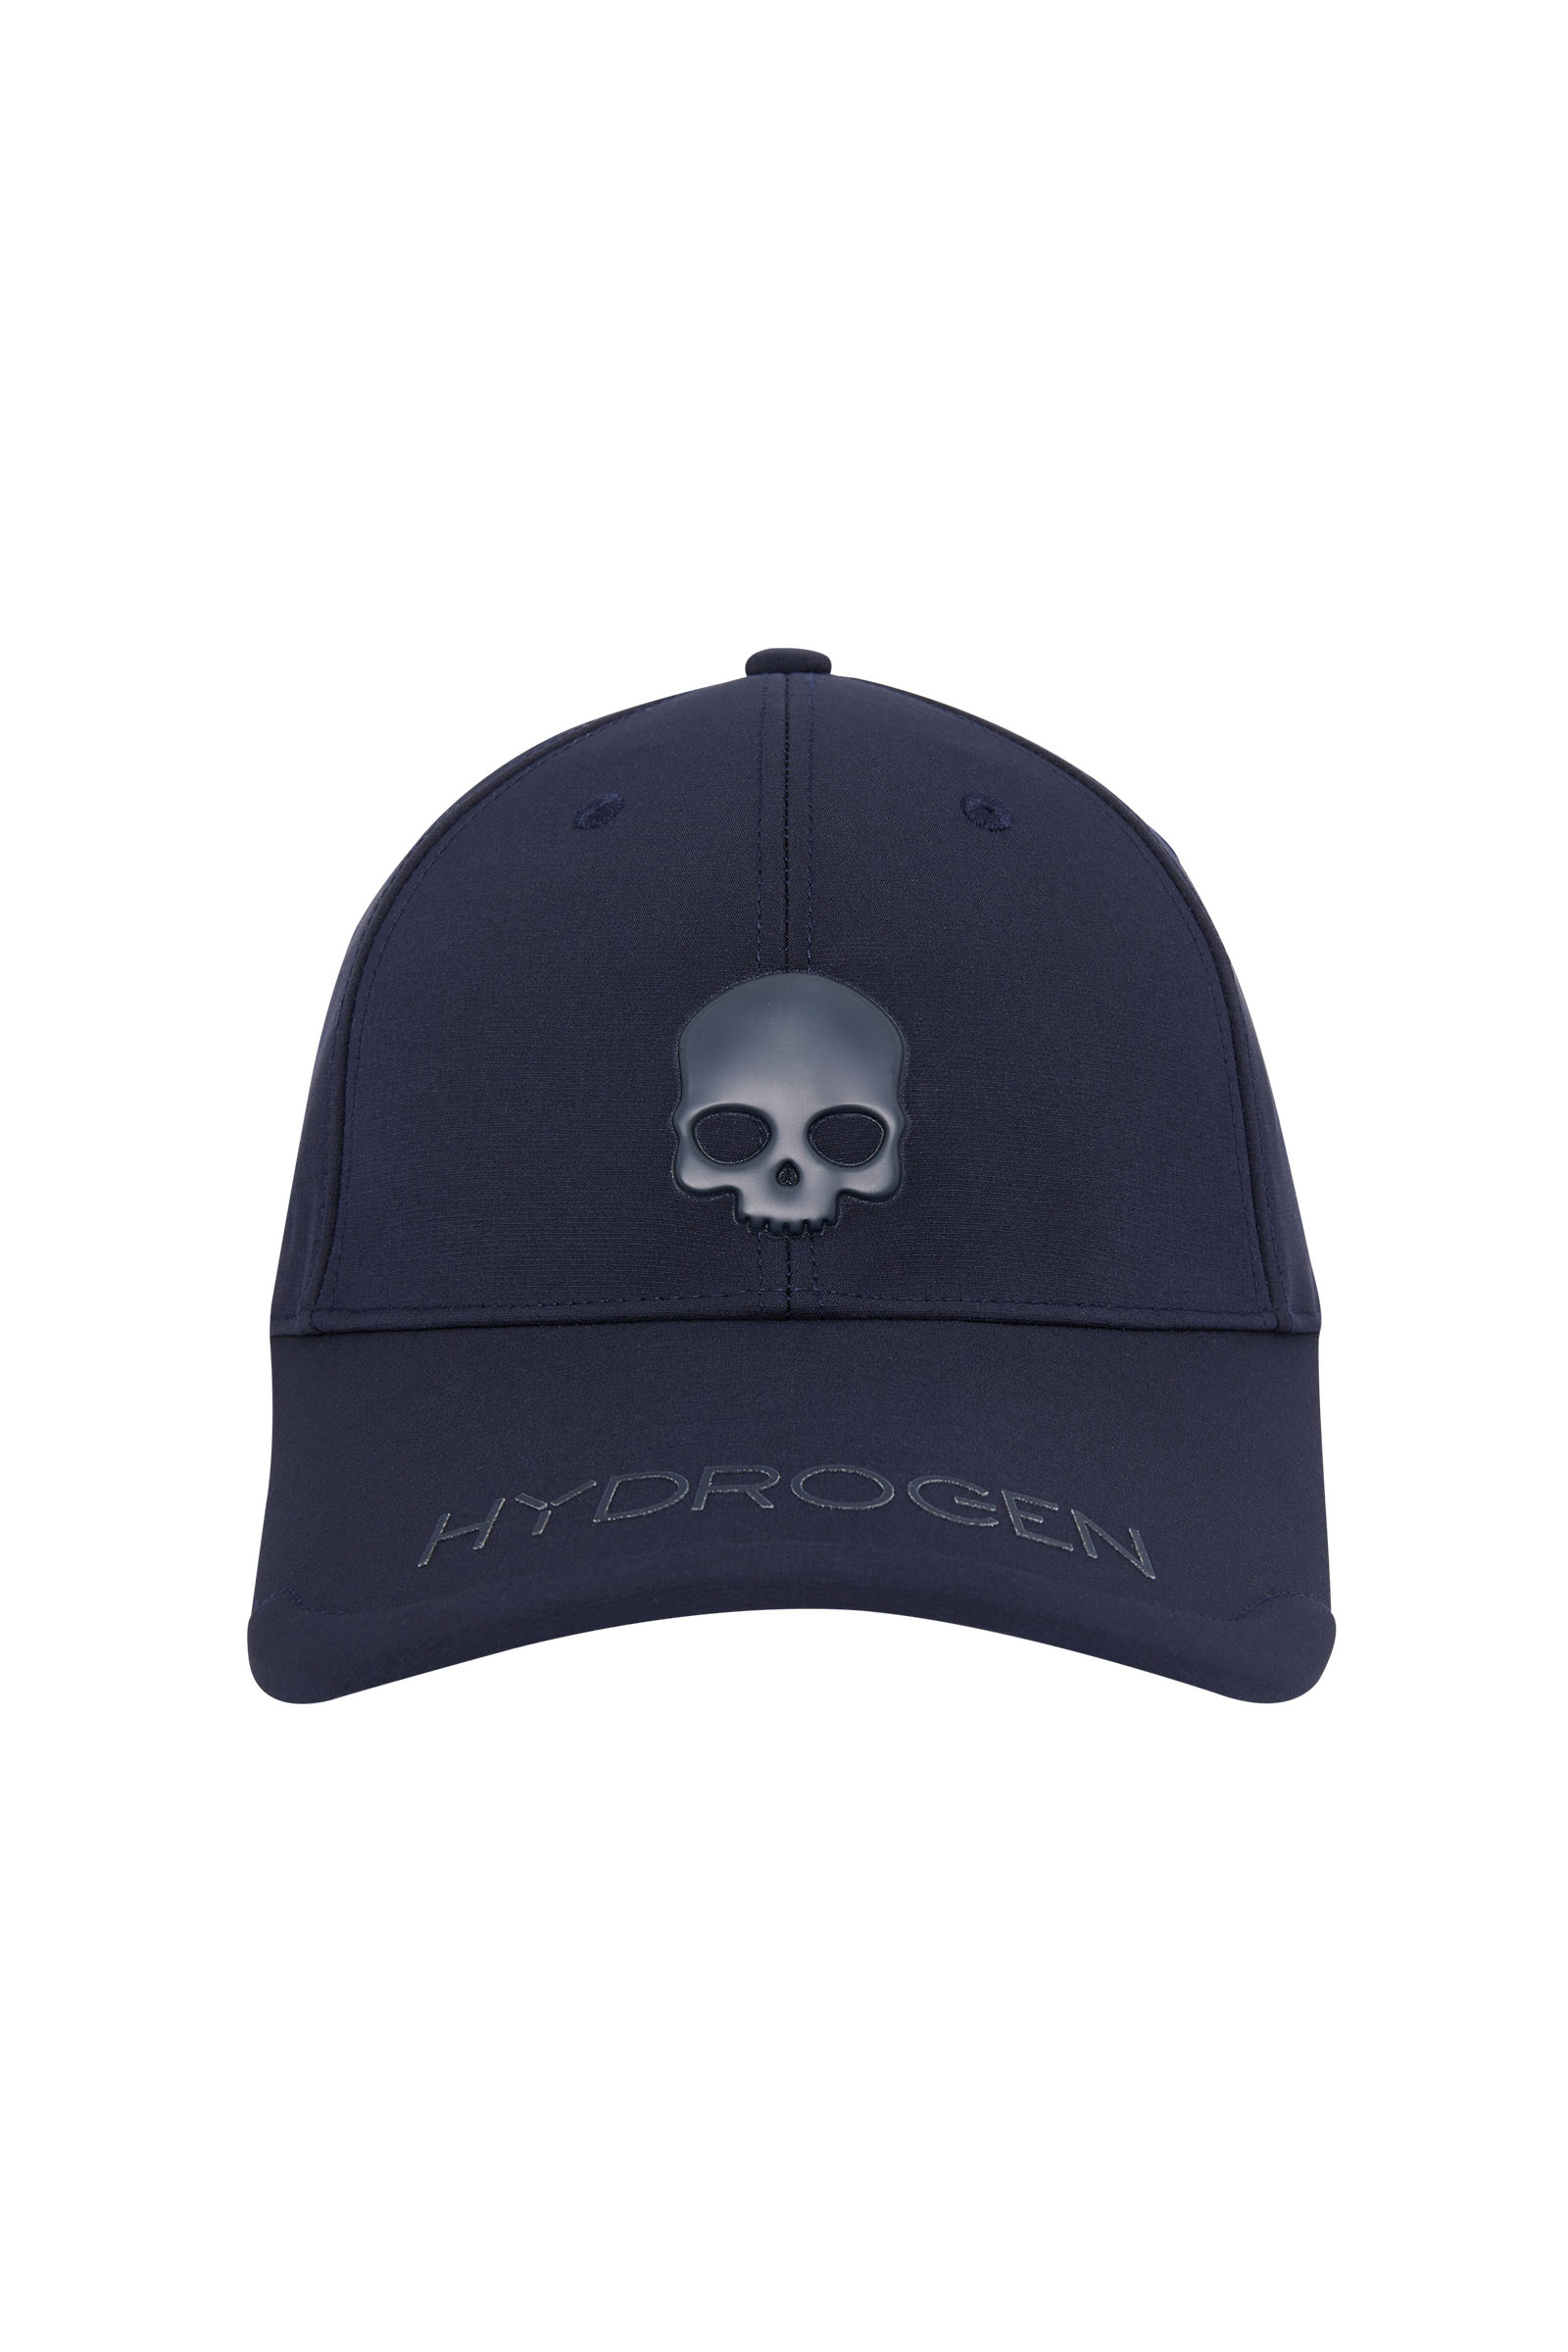 UNISEX BALL CAP - BLUE - Hydrogen - Luxury Sportwear